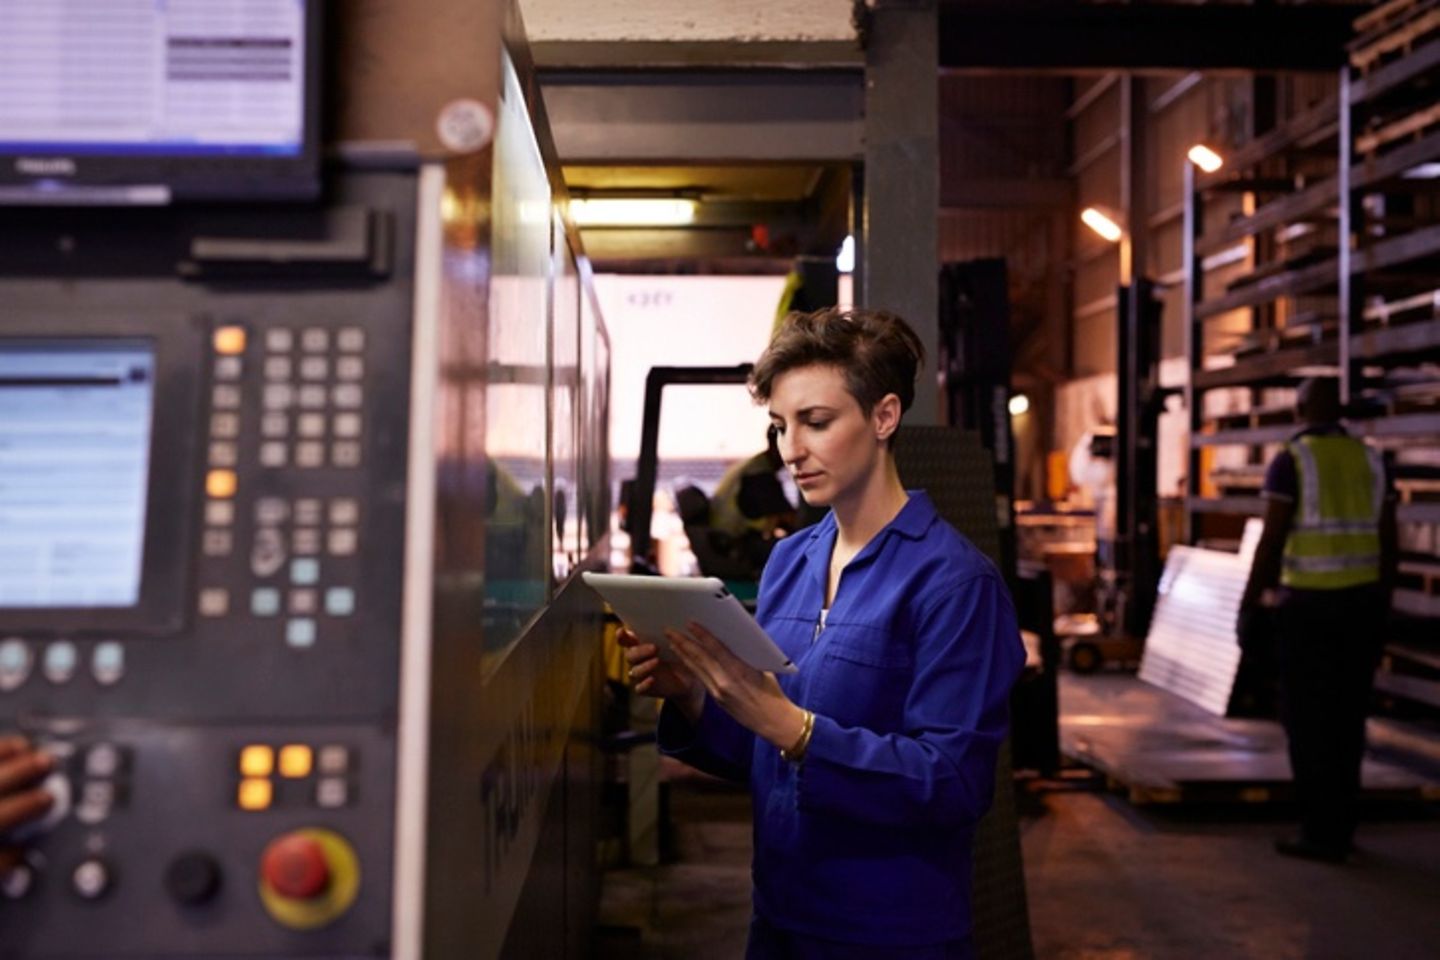 Uma trabalhadora do setor de aço com um traje azul está segurando um tablet na mão.